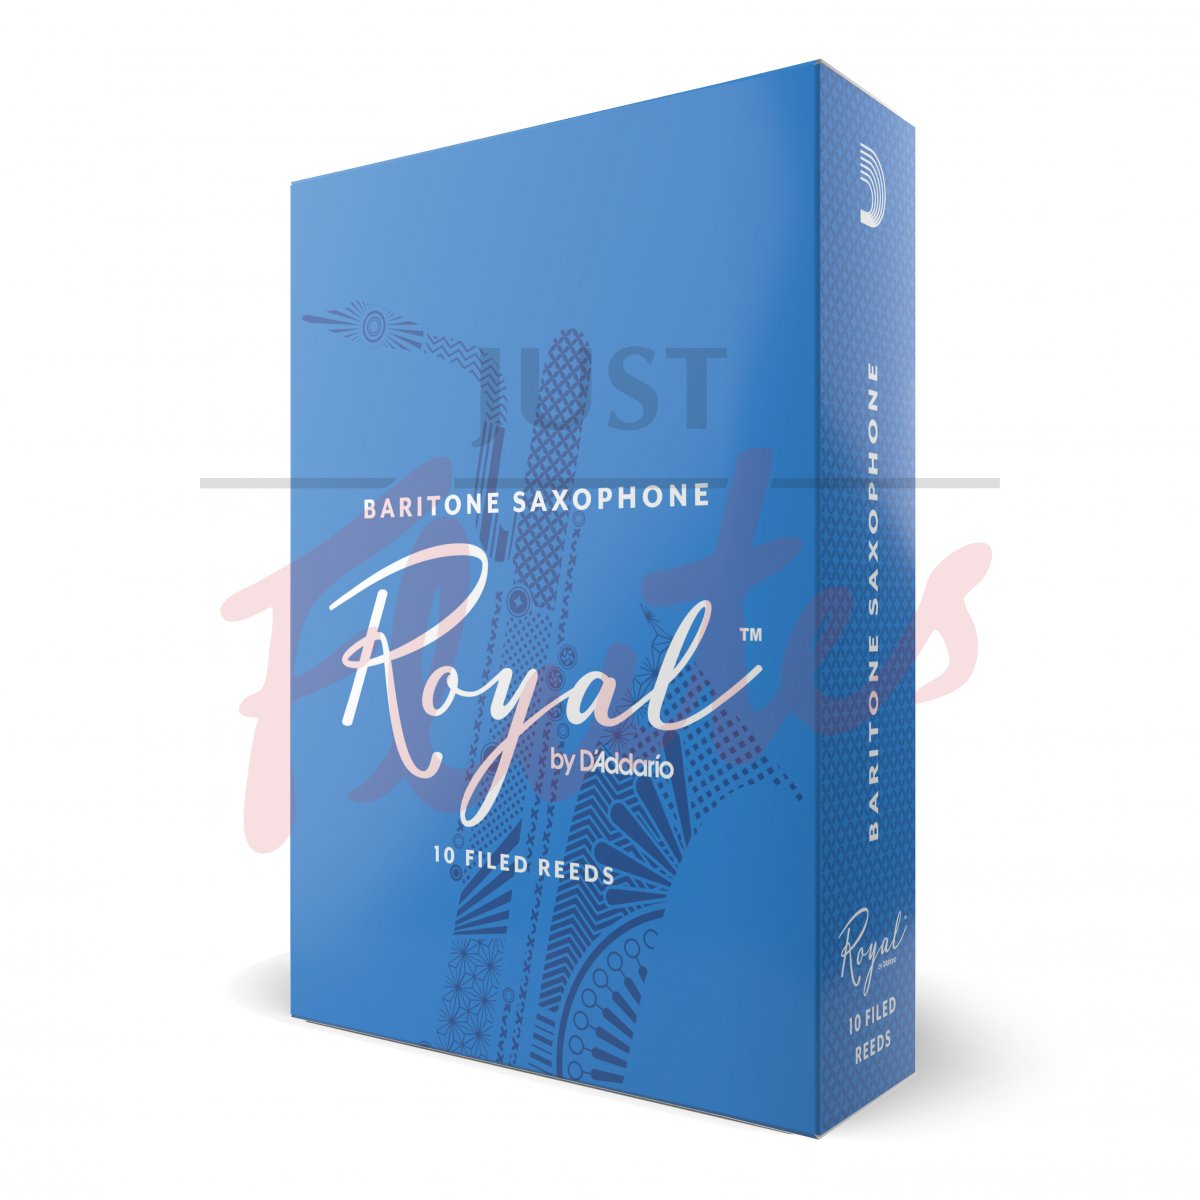 Royal by D'Addario RLB1040 Baritone Saxophone 4 Reeds, 10-pack